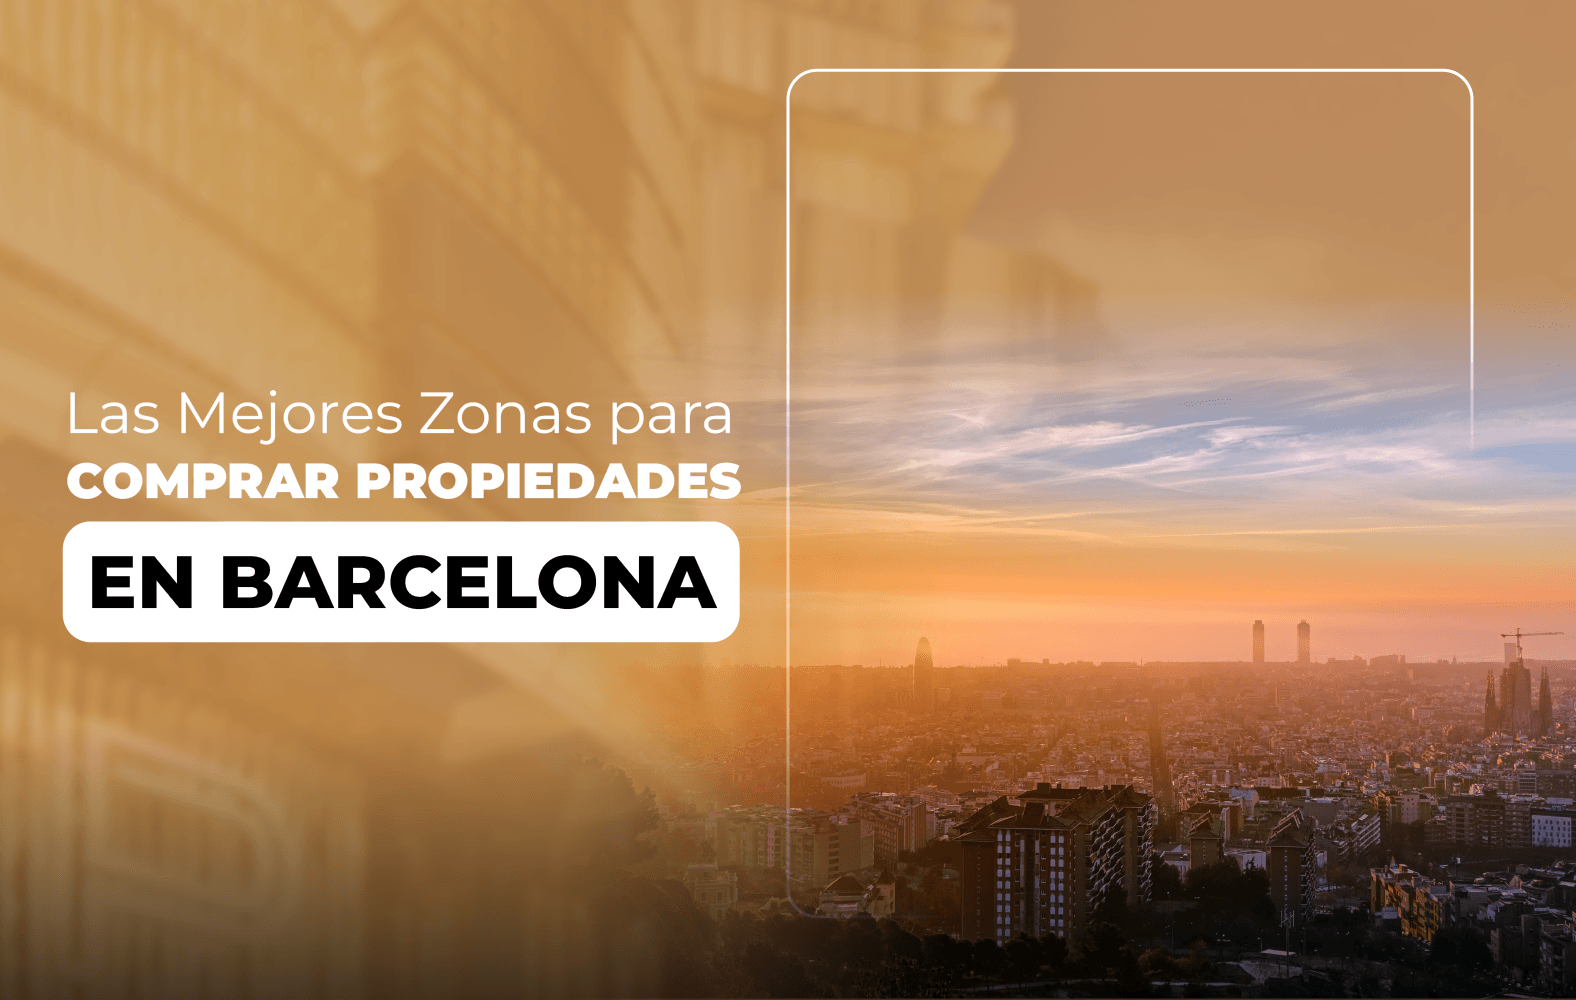 Las Mejores Zonas para Comprar Propiedades en Barcelona: